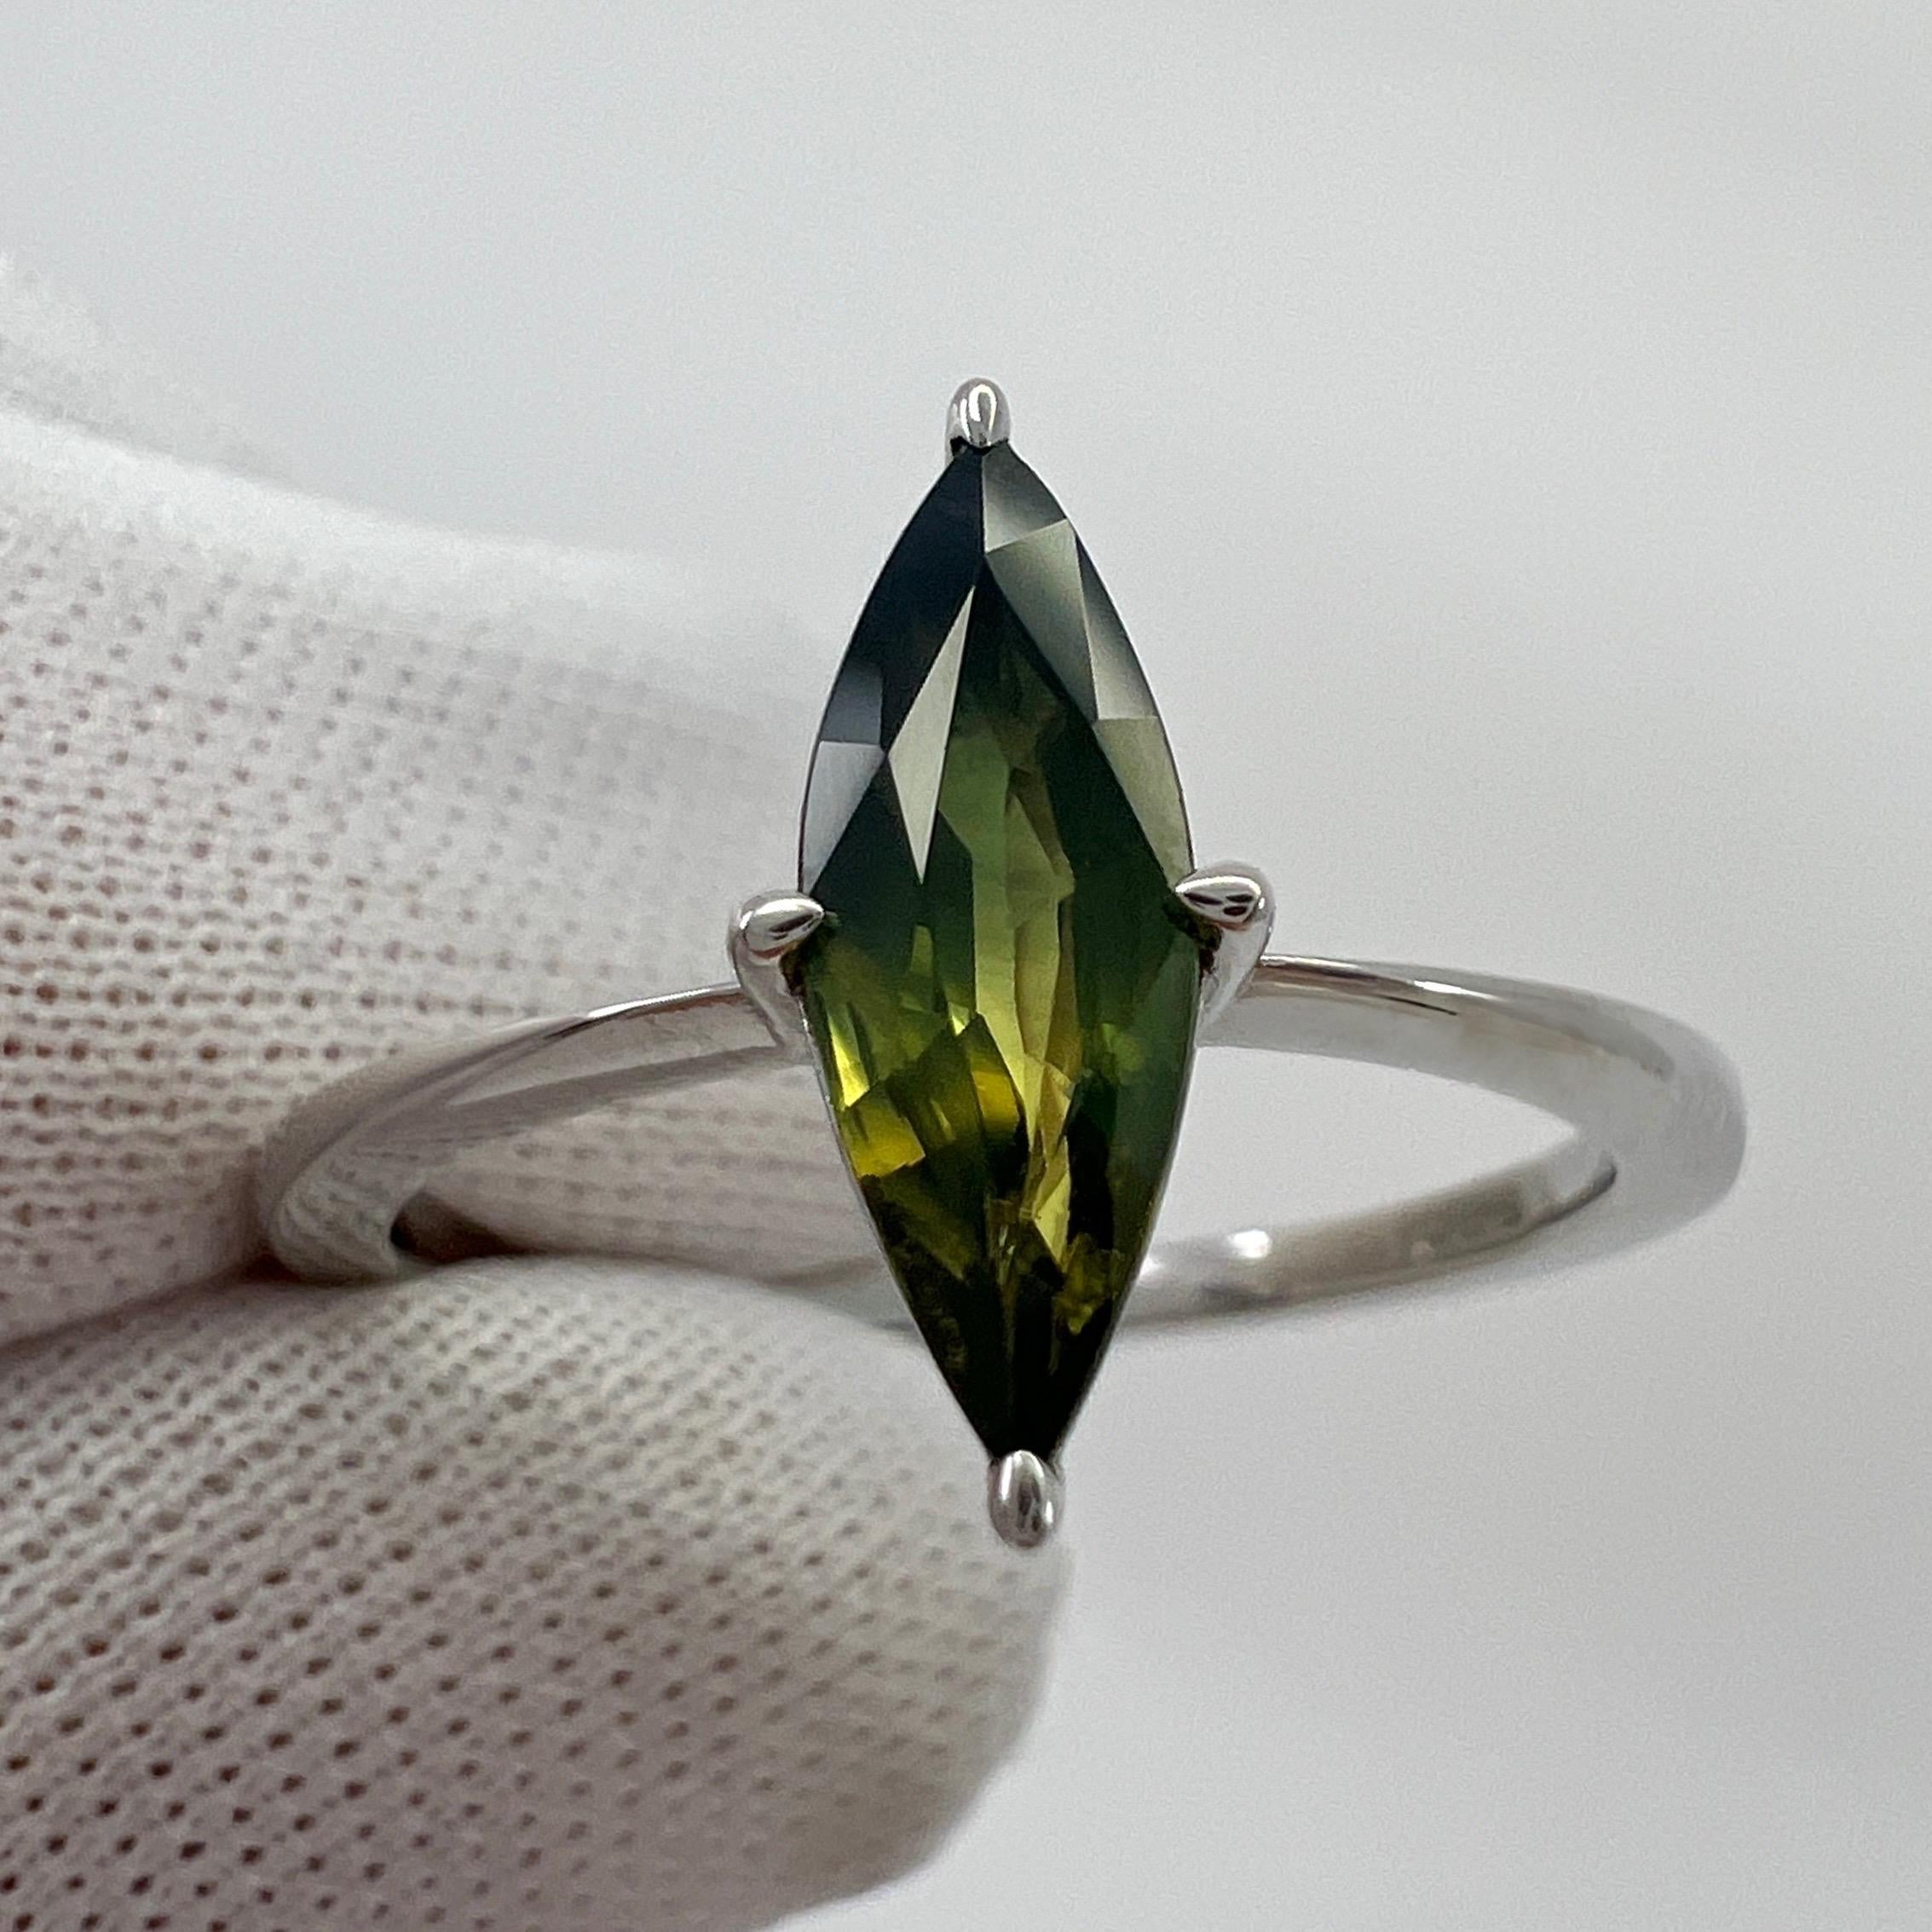 Einzigartige natürliche Parti Farbe australischen unbehandelten Saphir 18k Weißgold Ring. ITSIT entworfen. 

Einzigartiger 1,04 Karat Saphir mit einem seltenen blauen, grün-gelben Parti-Farbeffekt. Atemberaubend zu sehen. 

Vollständig